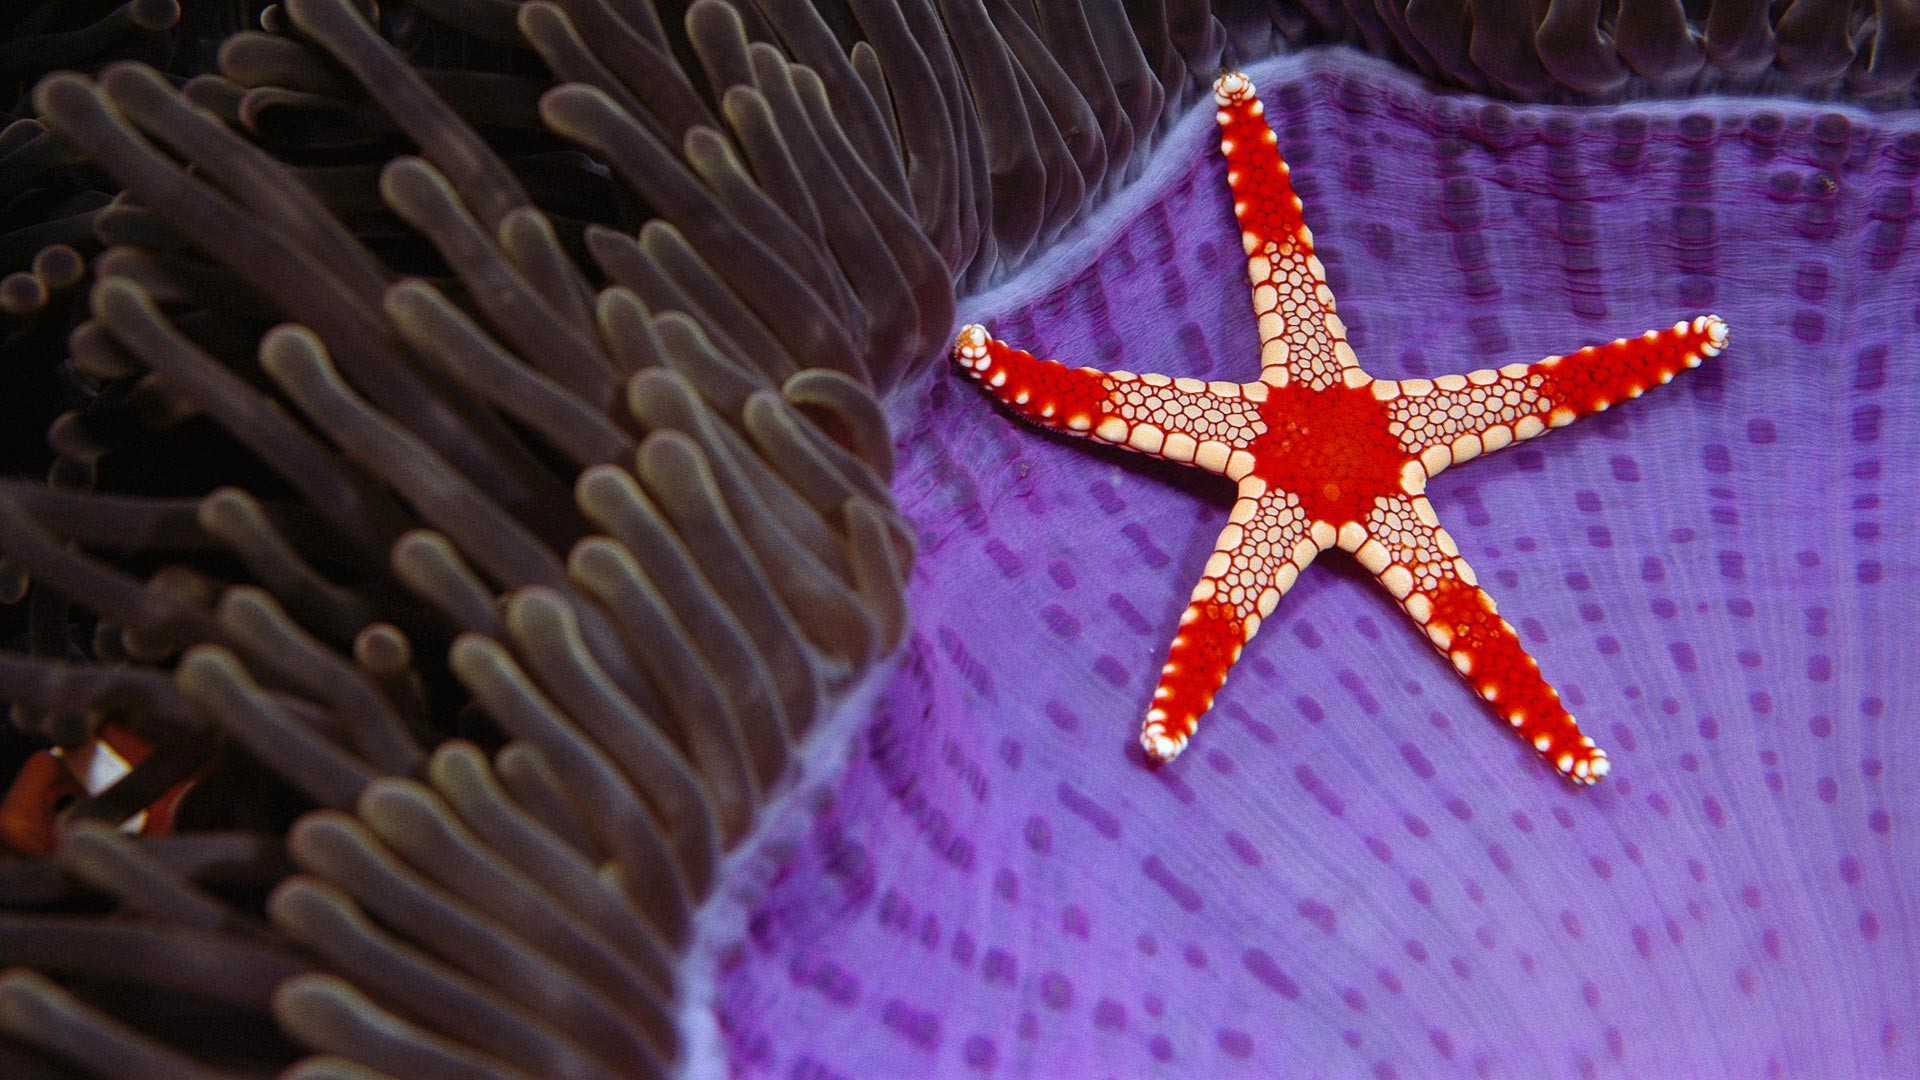 General 1920x1080 underwater sea nature starfish fish animals coral